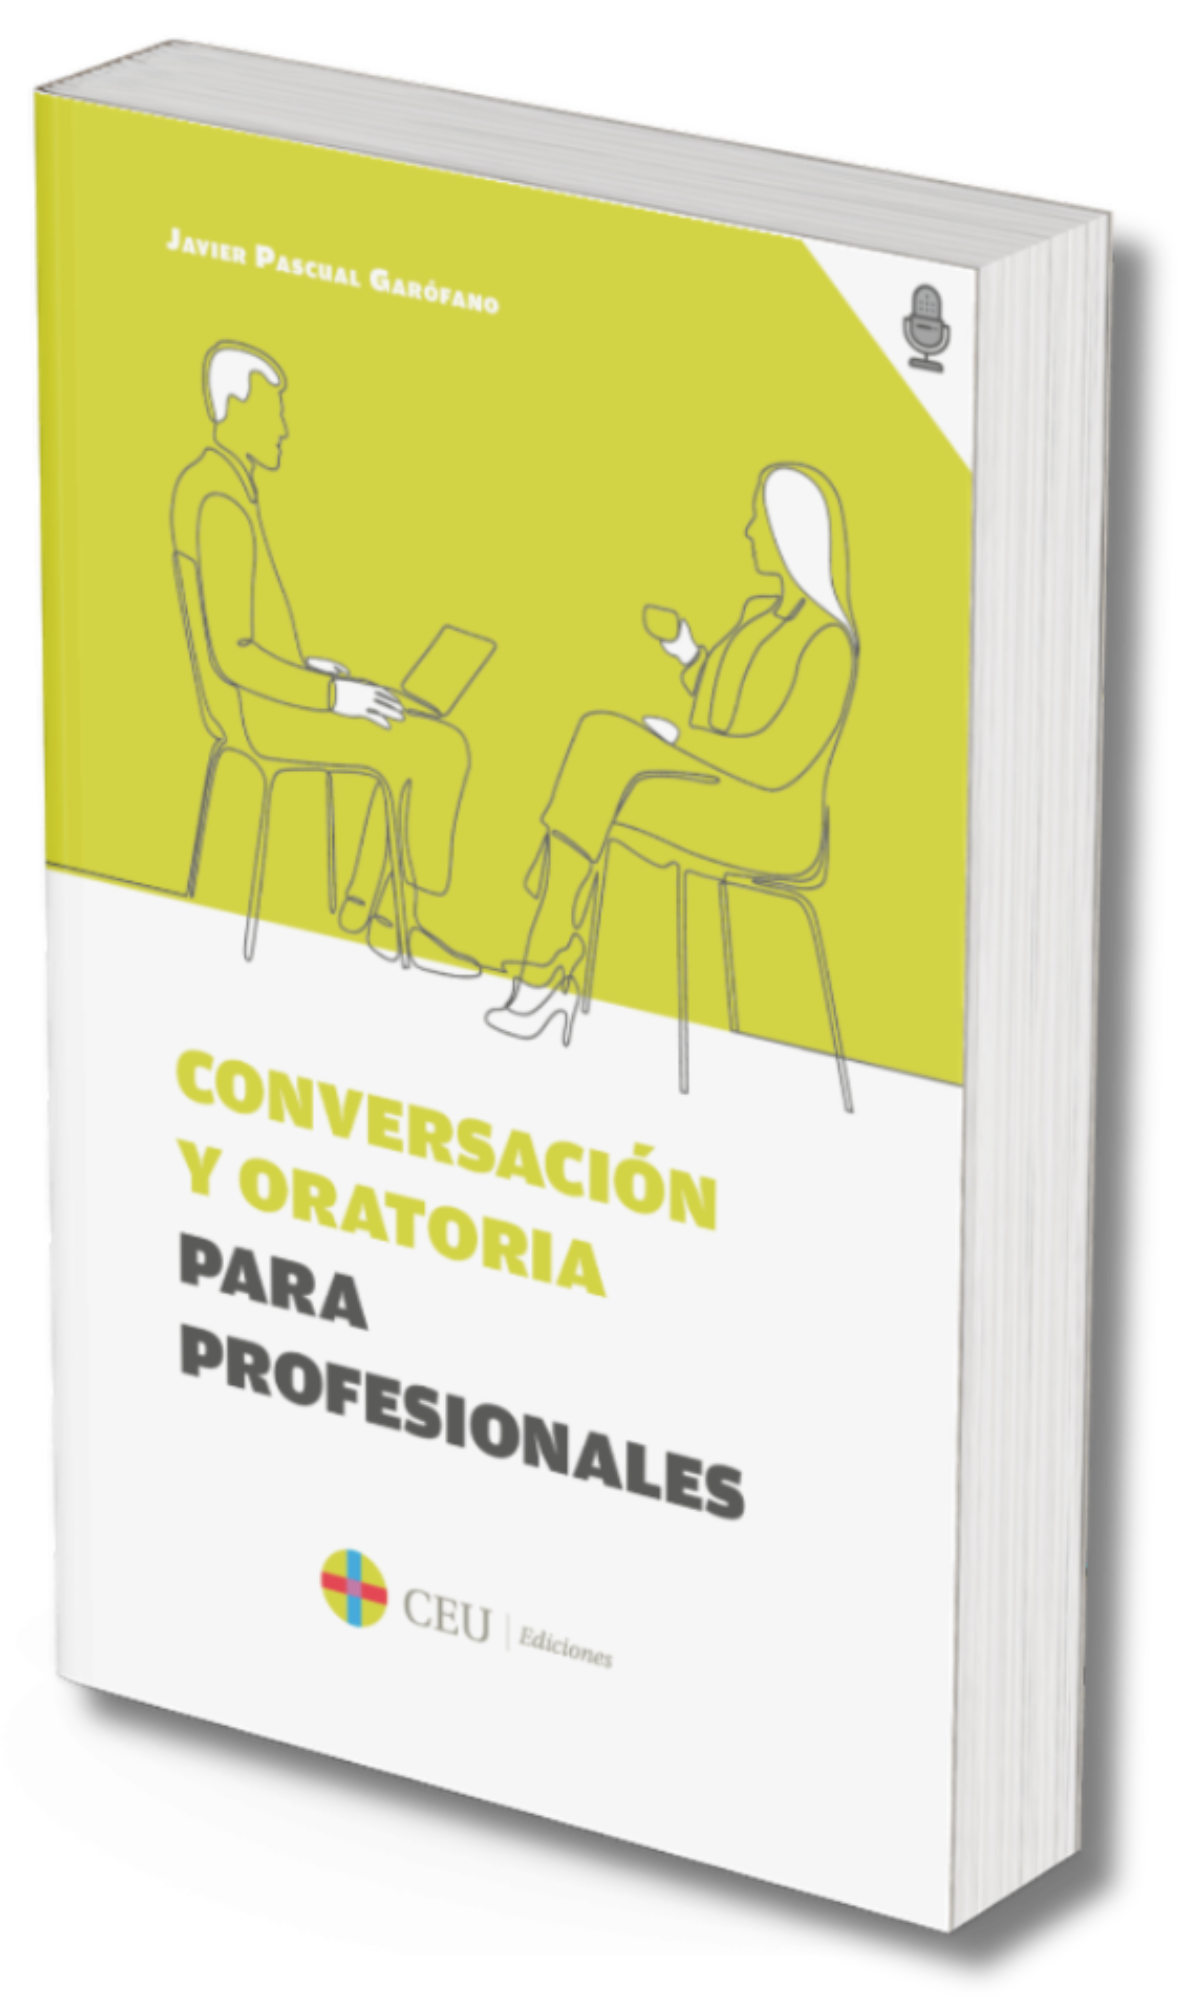 Conversación y oratoria para profesionales de Javier Pascual Garofano